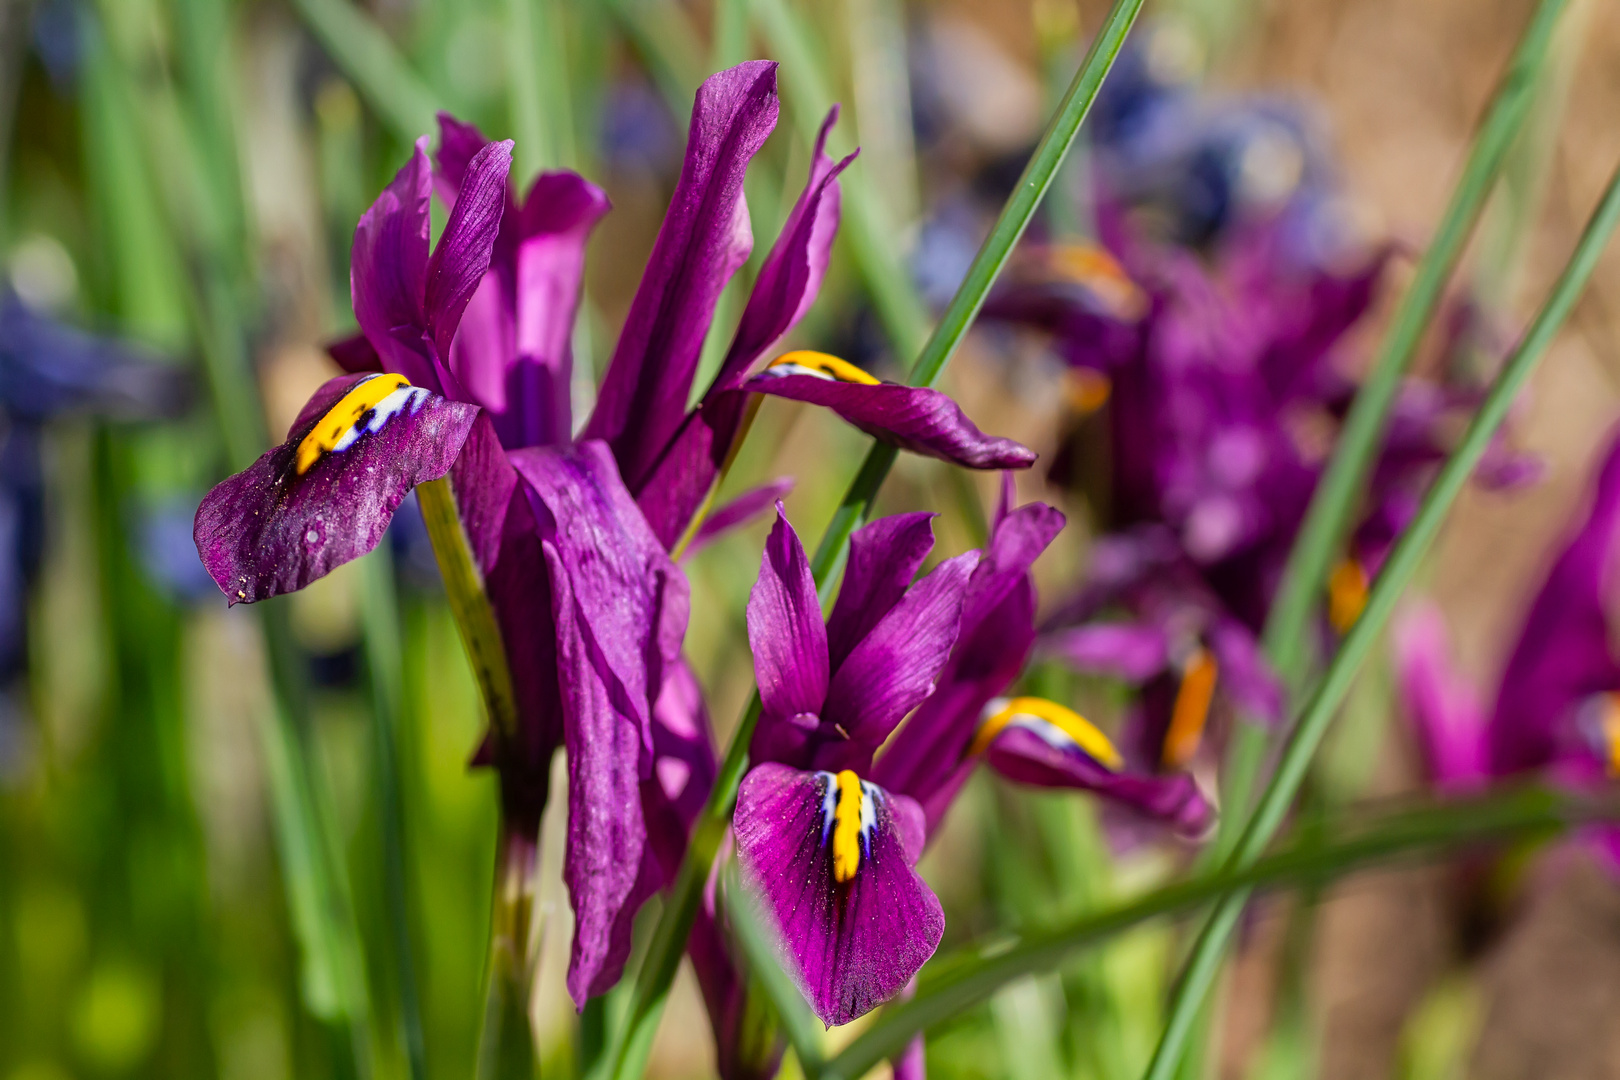 Violette Iris